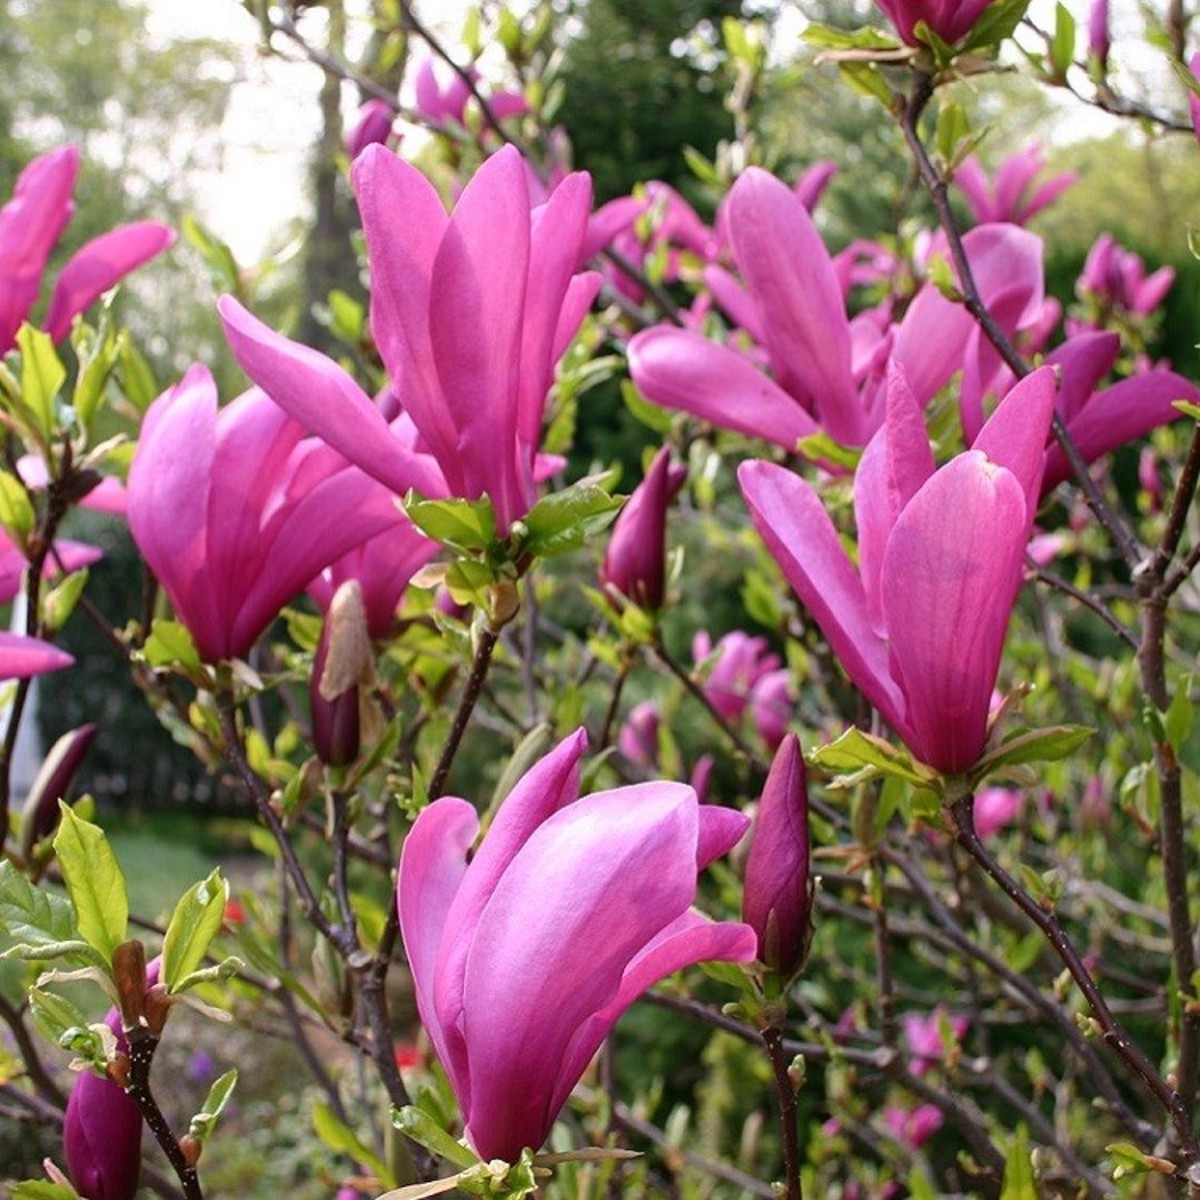 Tuliptree magnolia flower